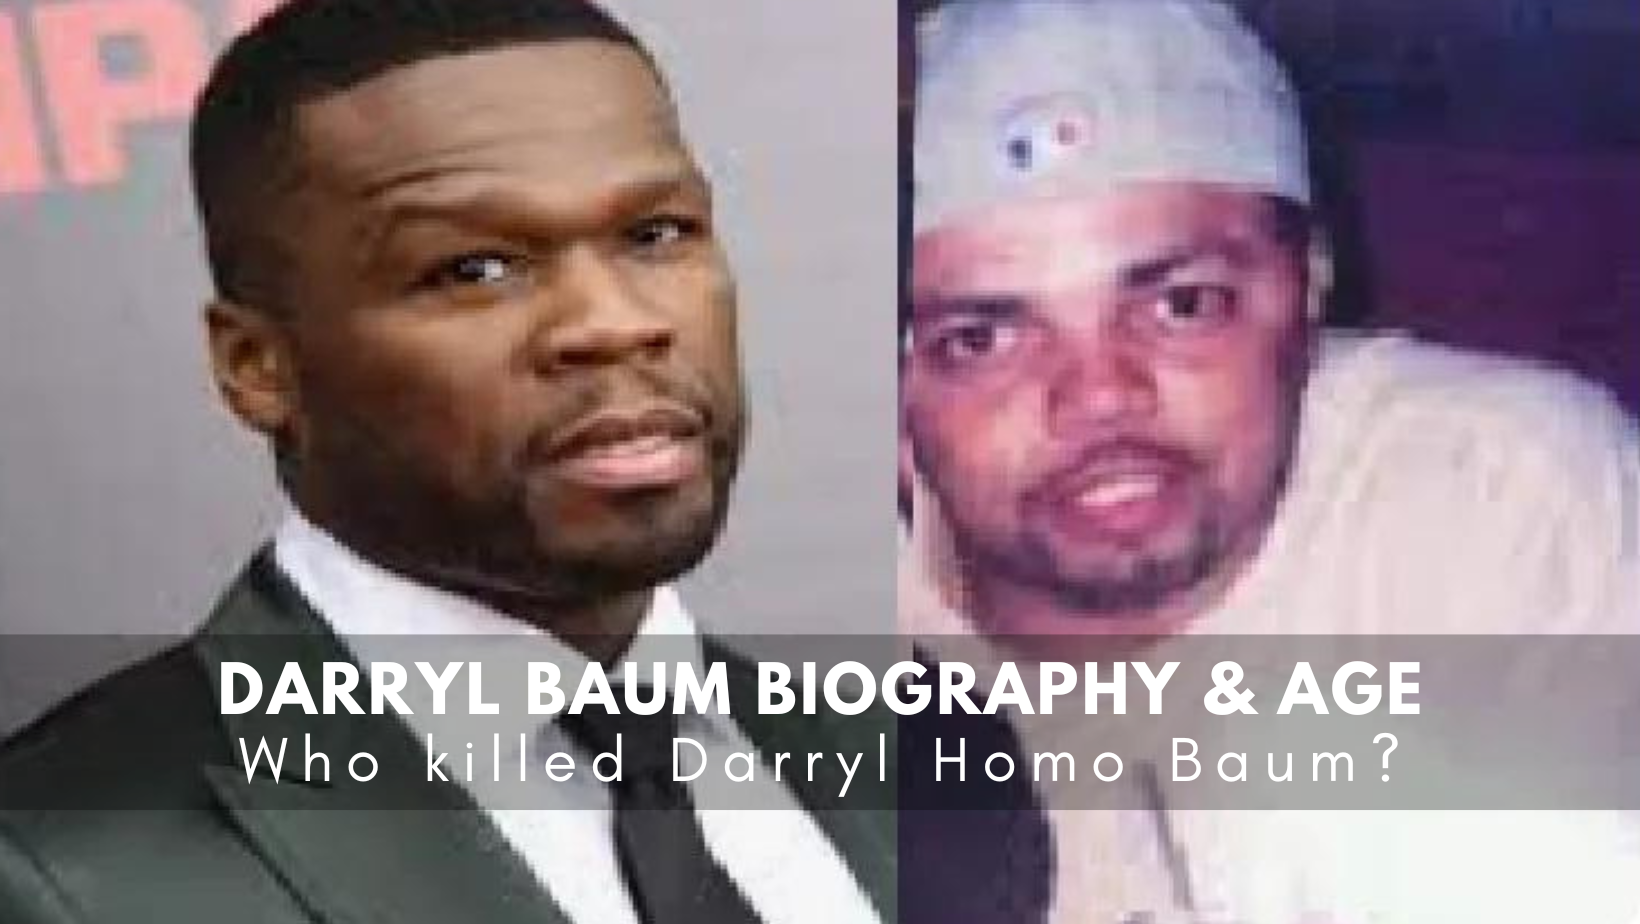 Darryl Baum Biography & Age: Who killed Darryl Homo Baum?